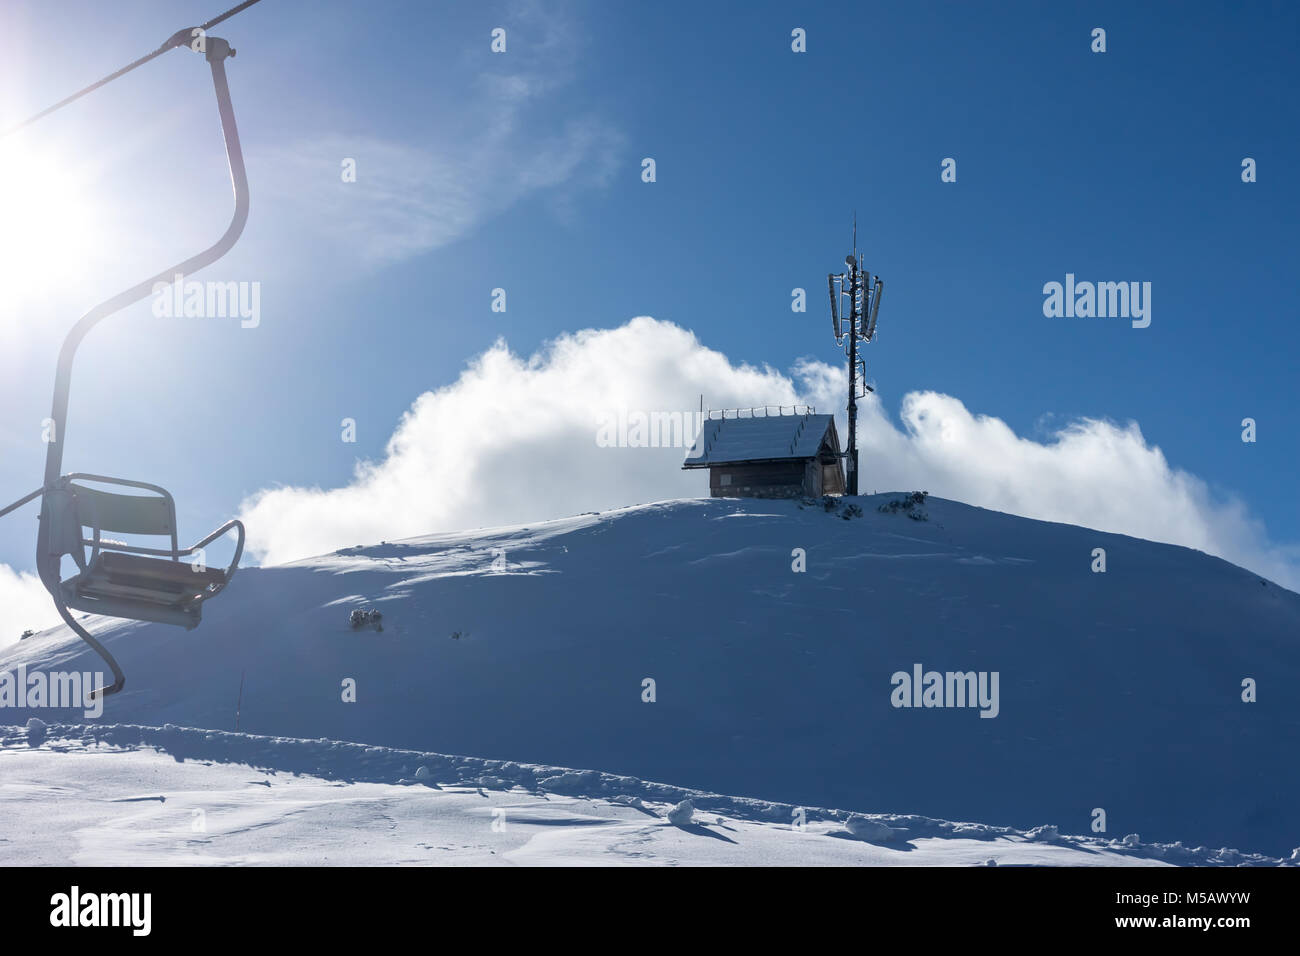 Estación de esquí de invierno telesilla Foto de stock